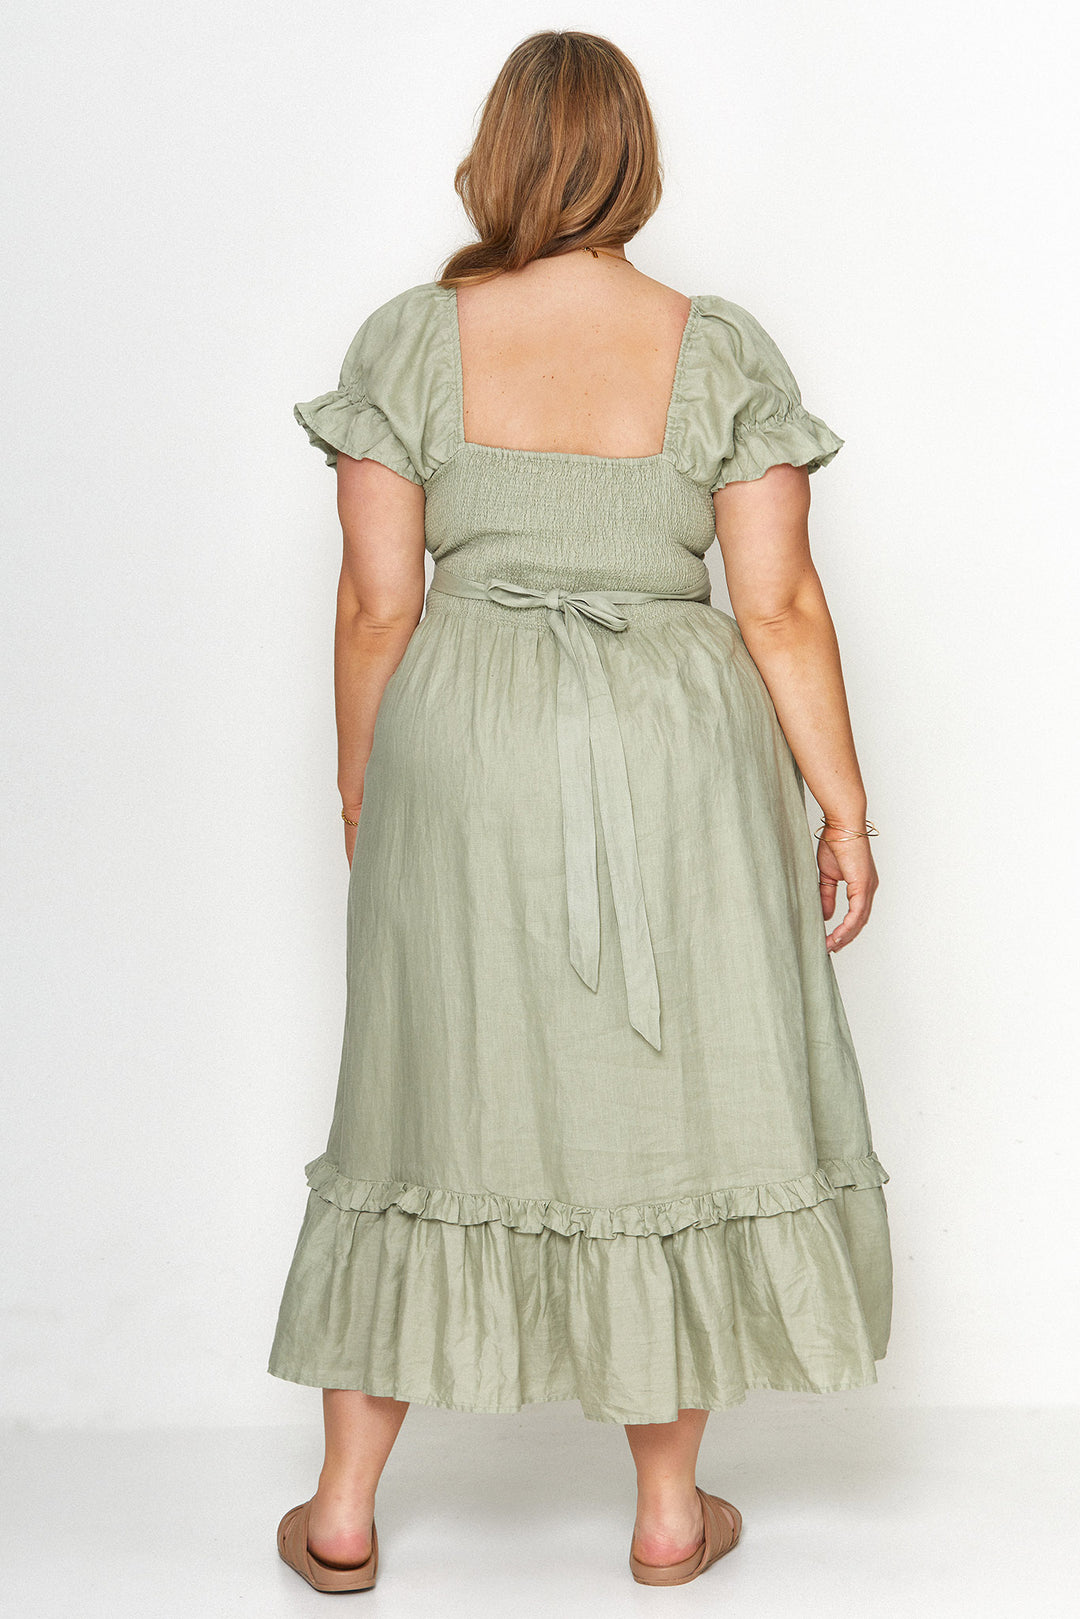 Marianne Sage Dress